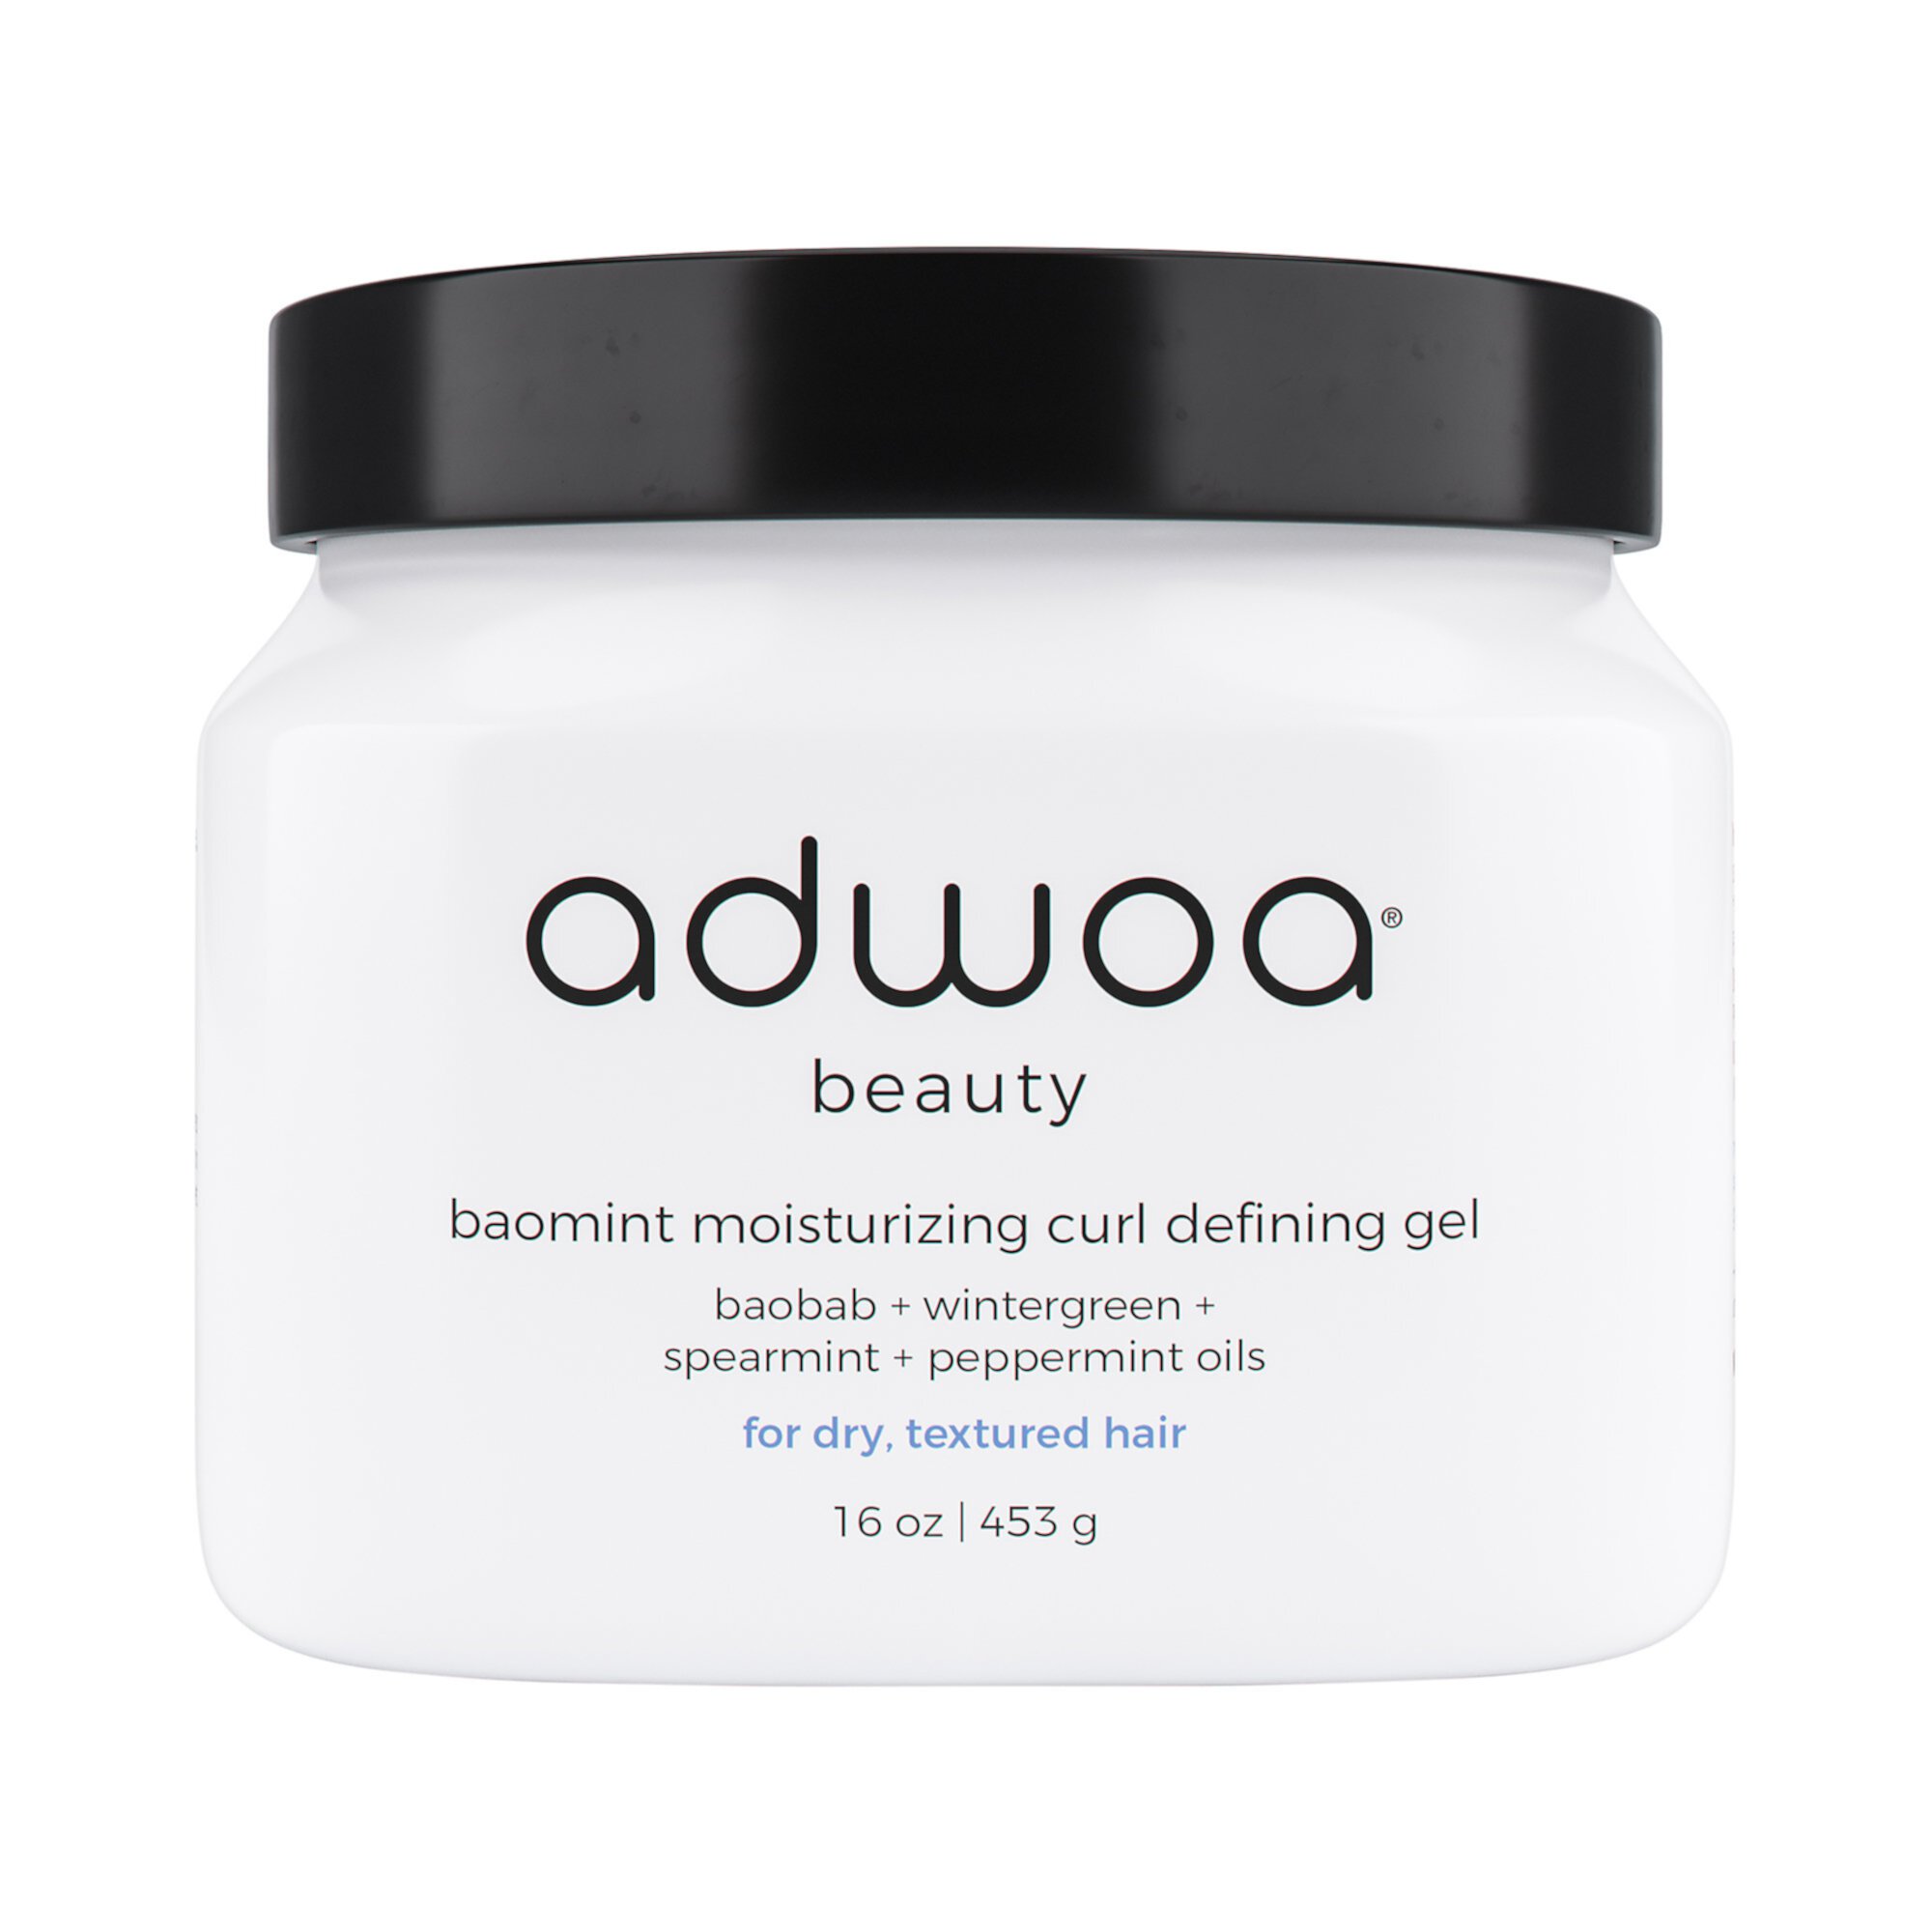 Baomint™ Moisturizing Curl Defining Gel Adwoa beauty